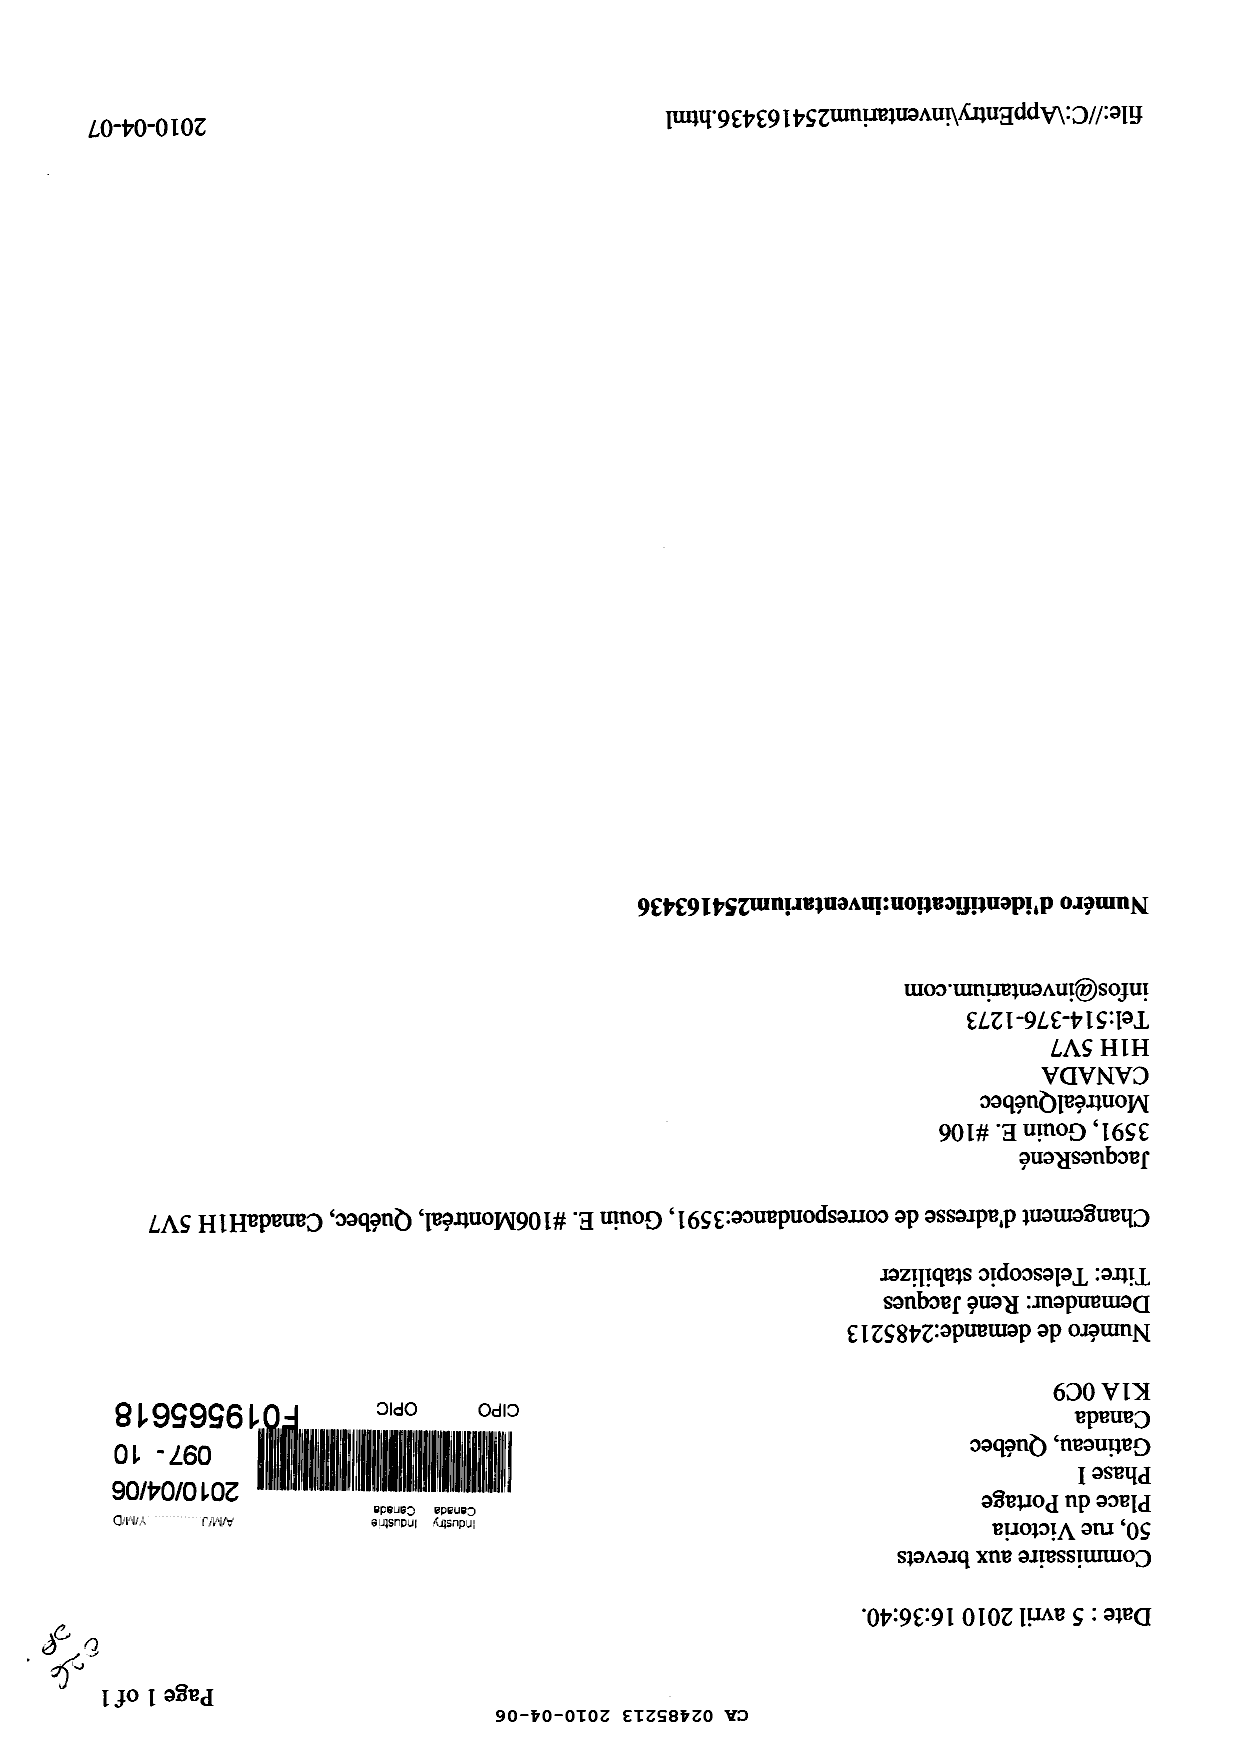 Document de brevet canadien 2485213. Correspondance 20091206. Image 1 de 1